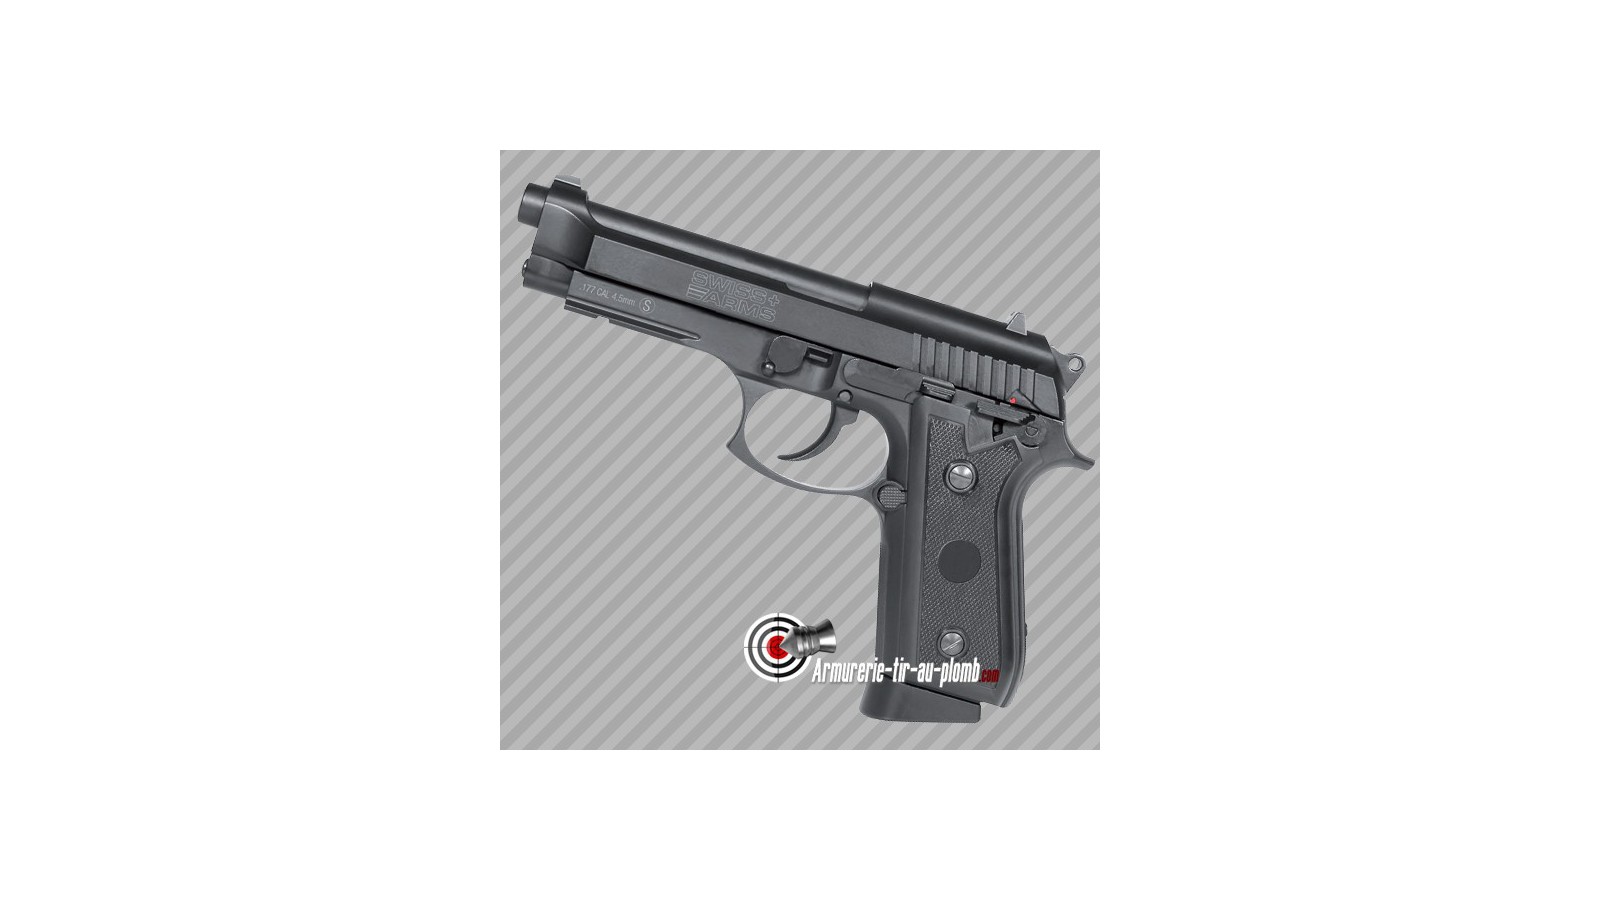 Pistolet à billes d'acier Swiss Arms PT99 au CO2 - 2.2 joules - cal 4.5mm